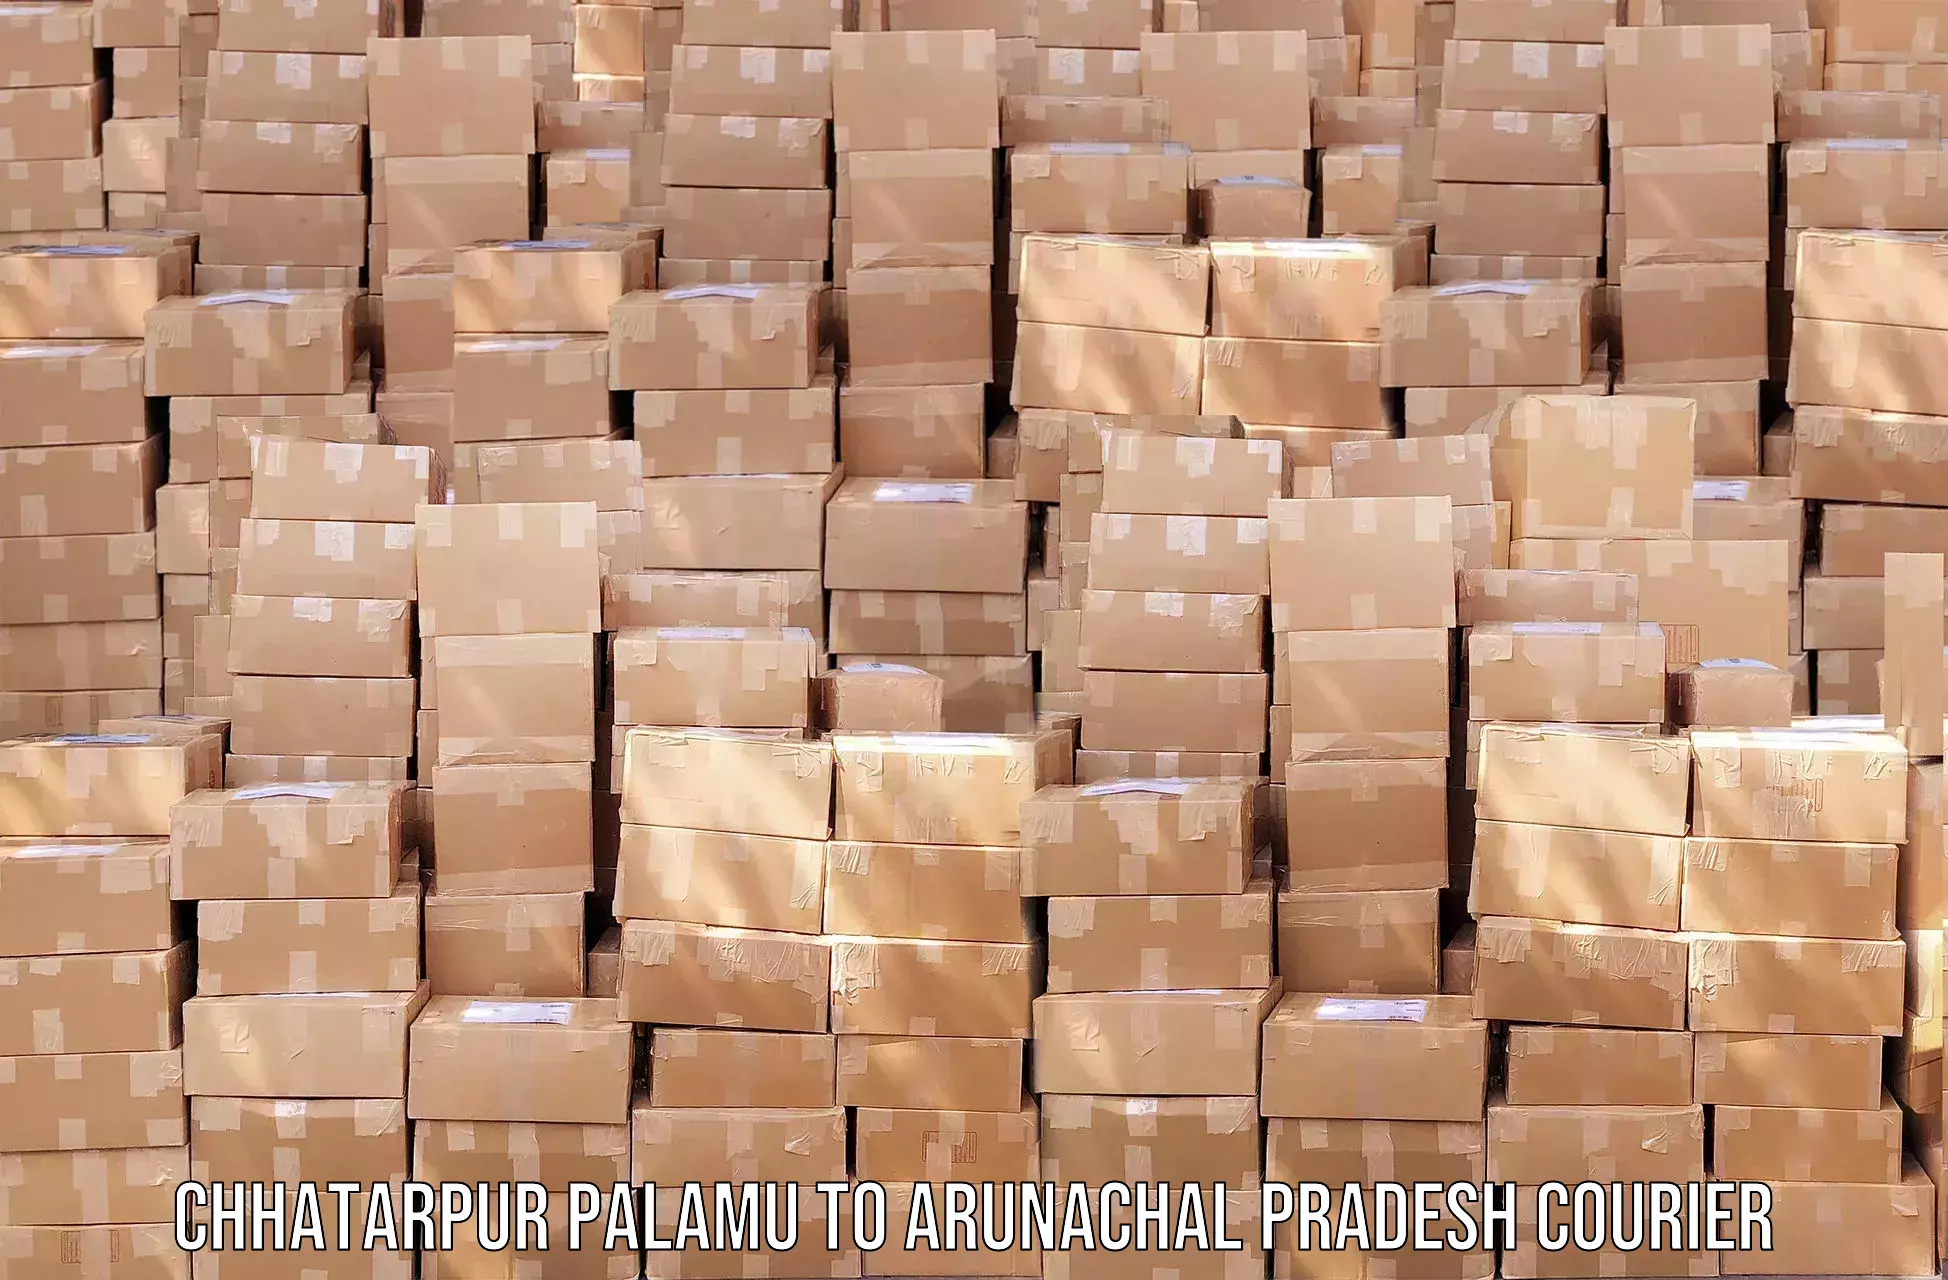 Efficient parcel service Chhatarpur Palamu to Naharlagun